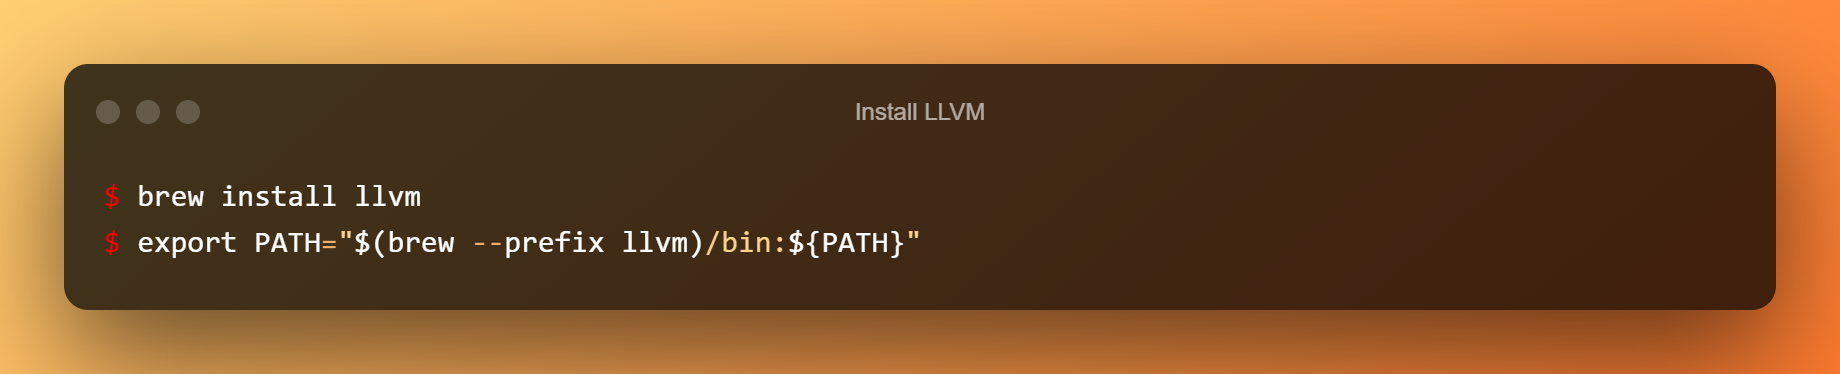 Install LLVM